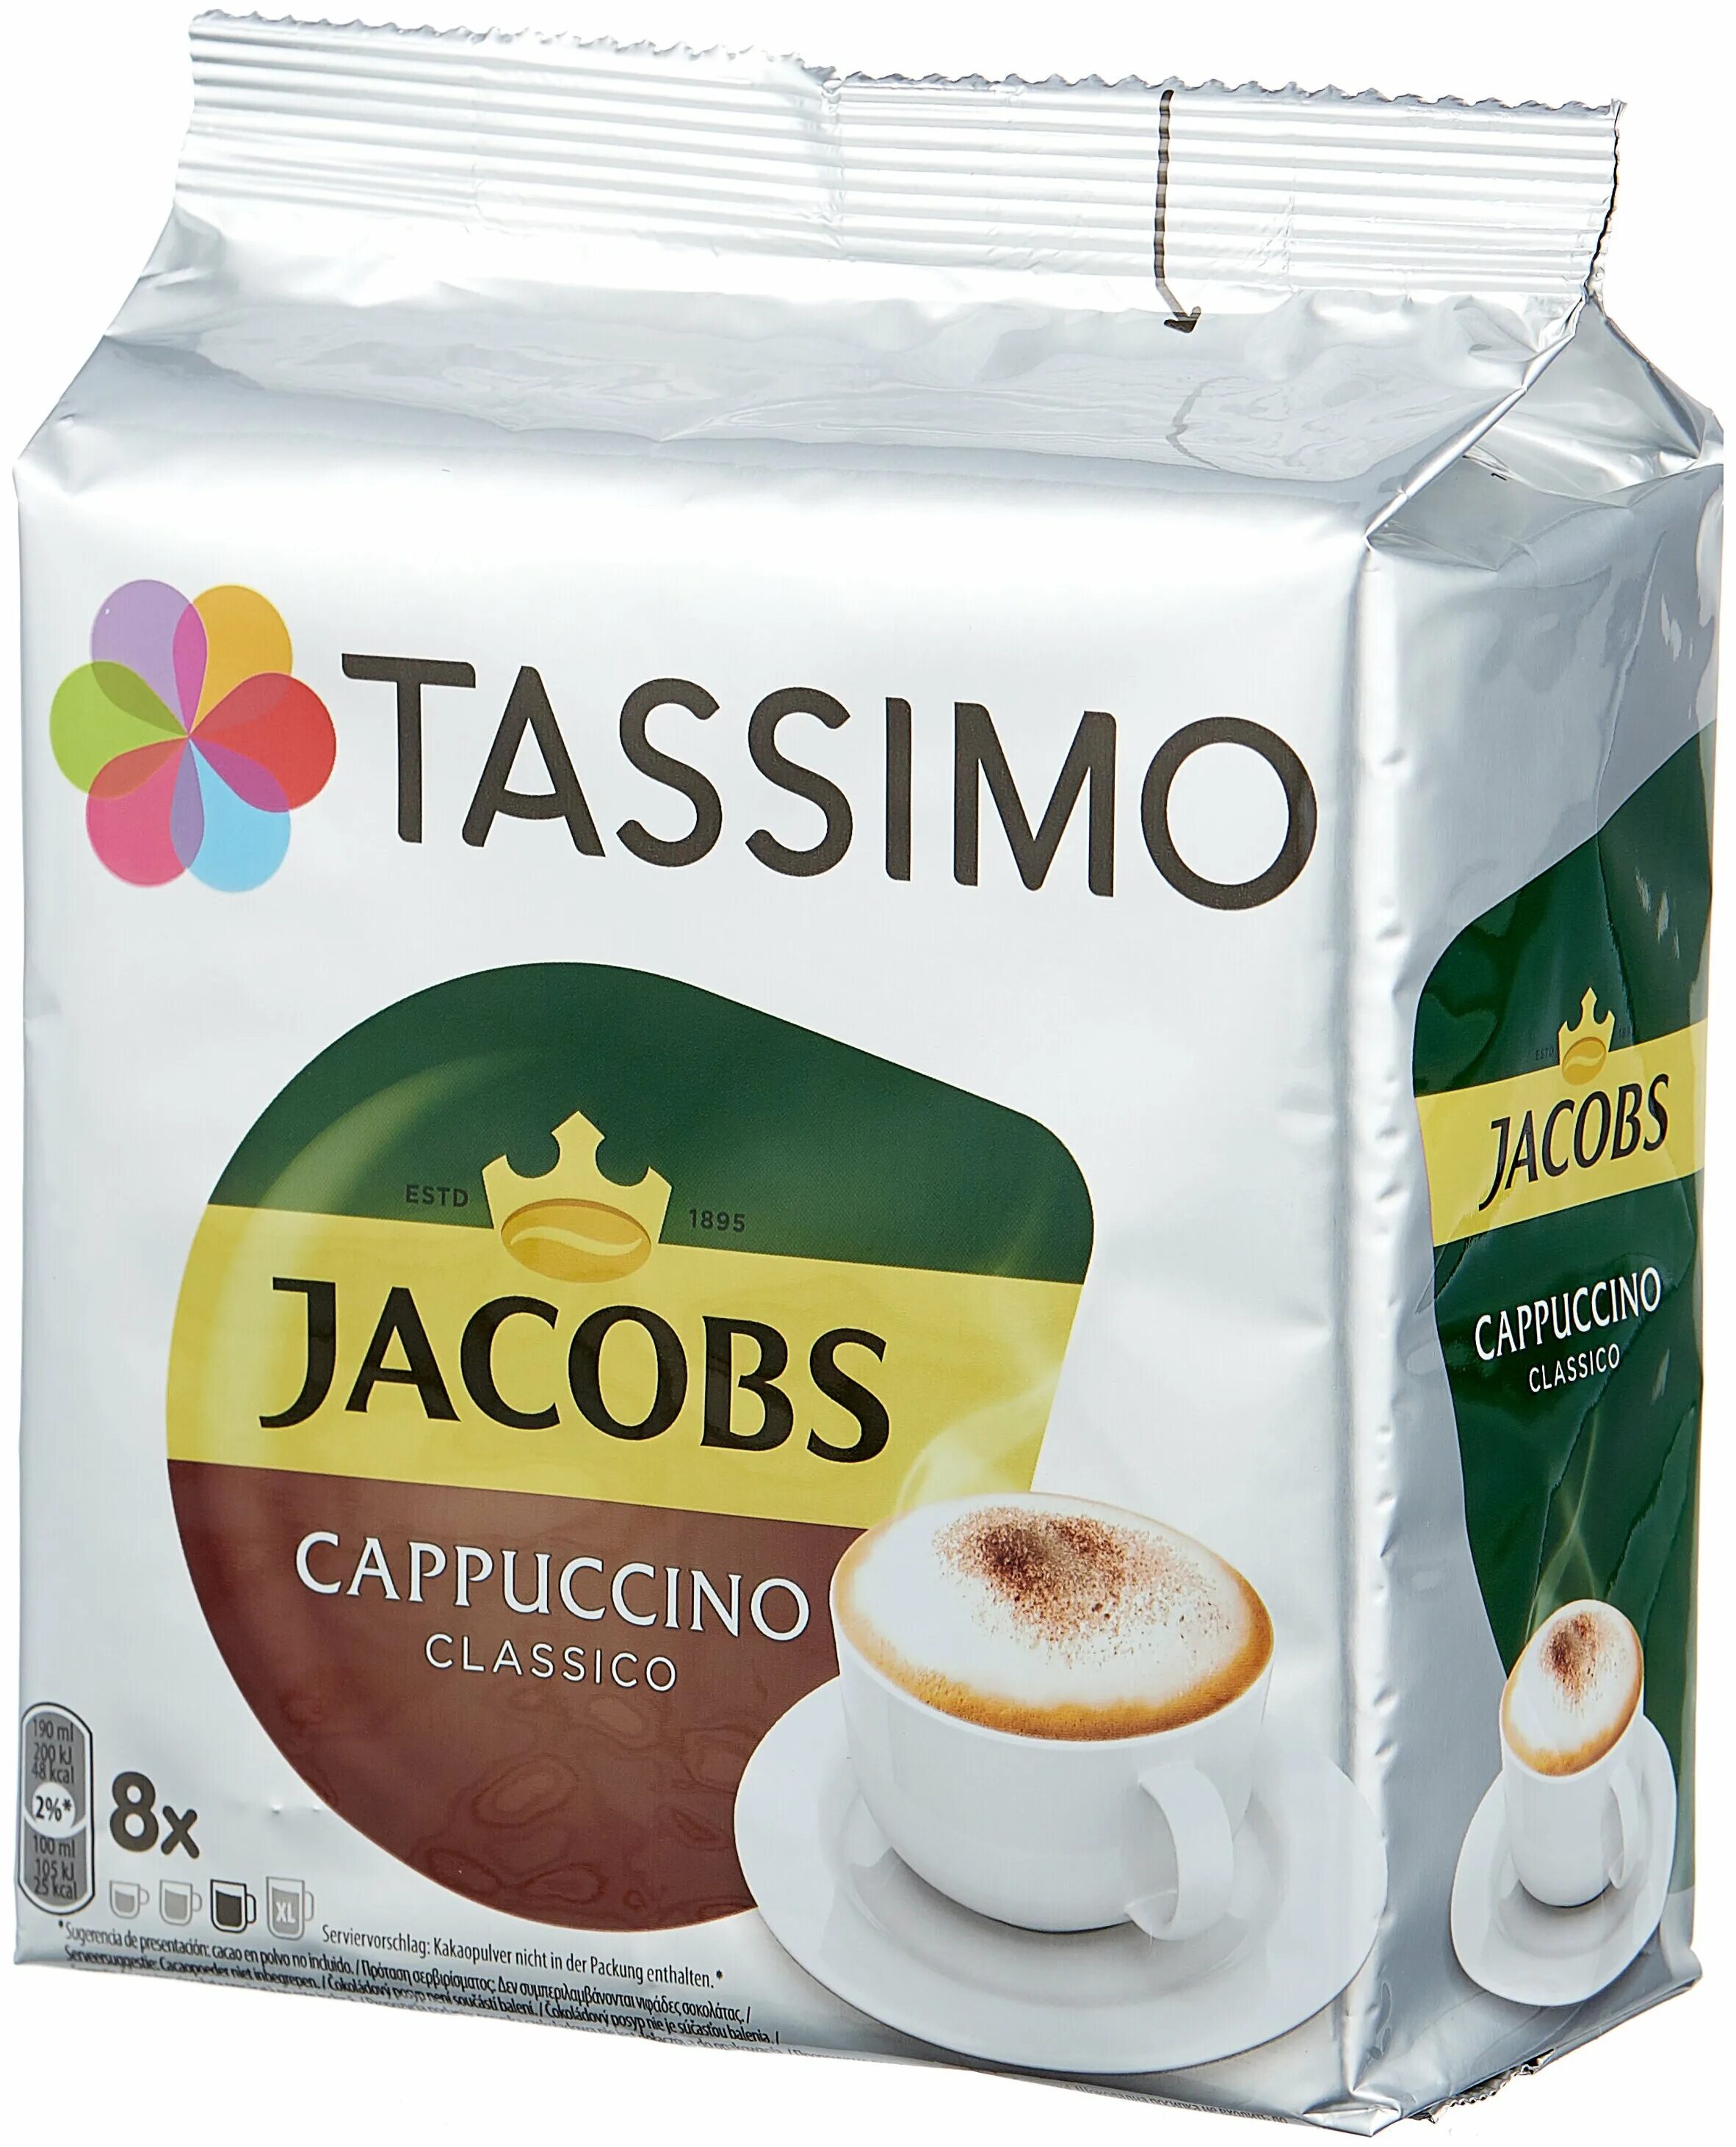 Купить т капсулы. Tassimo Jacobs Cappuccino Classico. Jacobs Tassimo капсулы капучино Классико. Капсулы Tassimo Cappuccino. Капсулы Тассимо Якобс капучино.